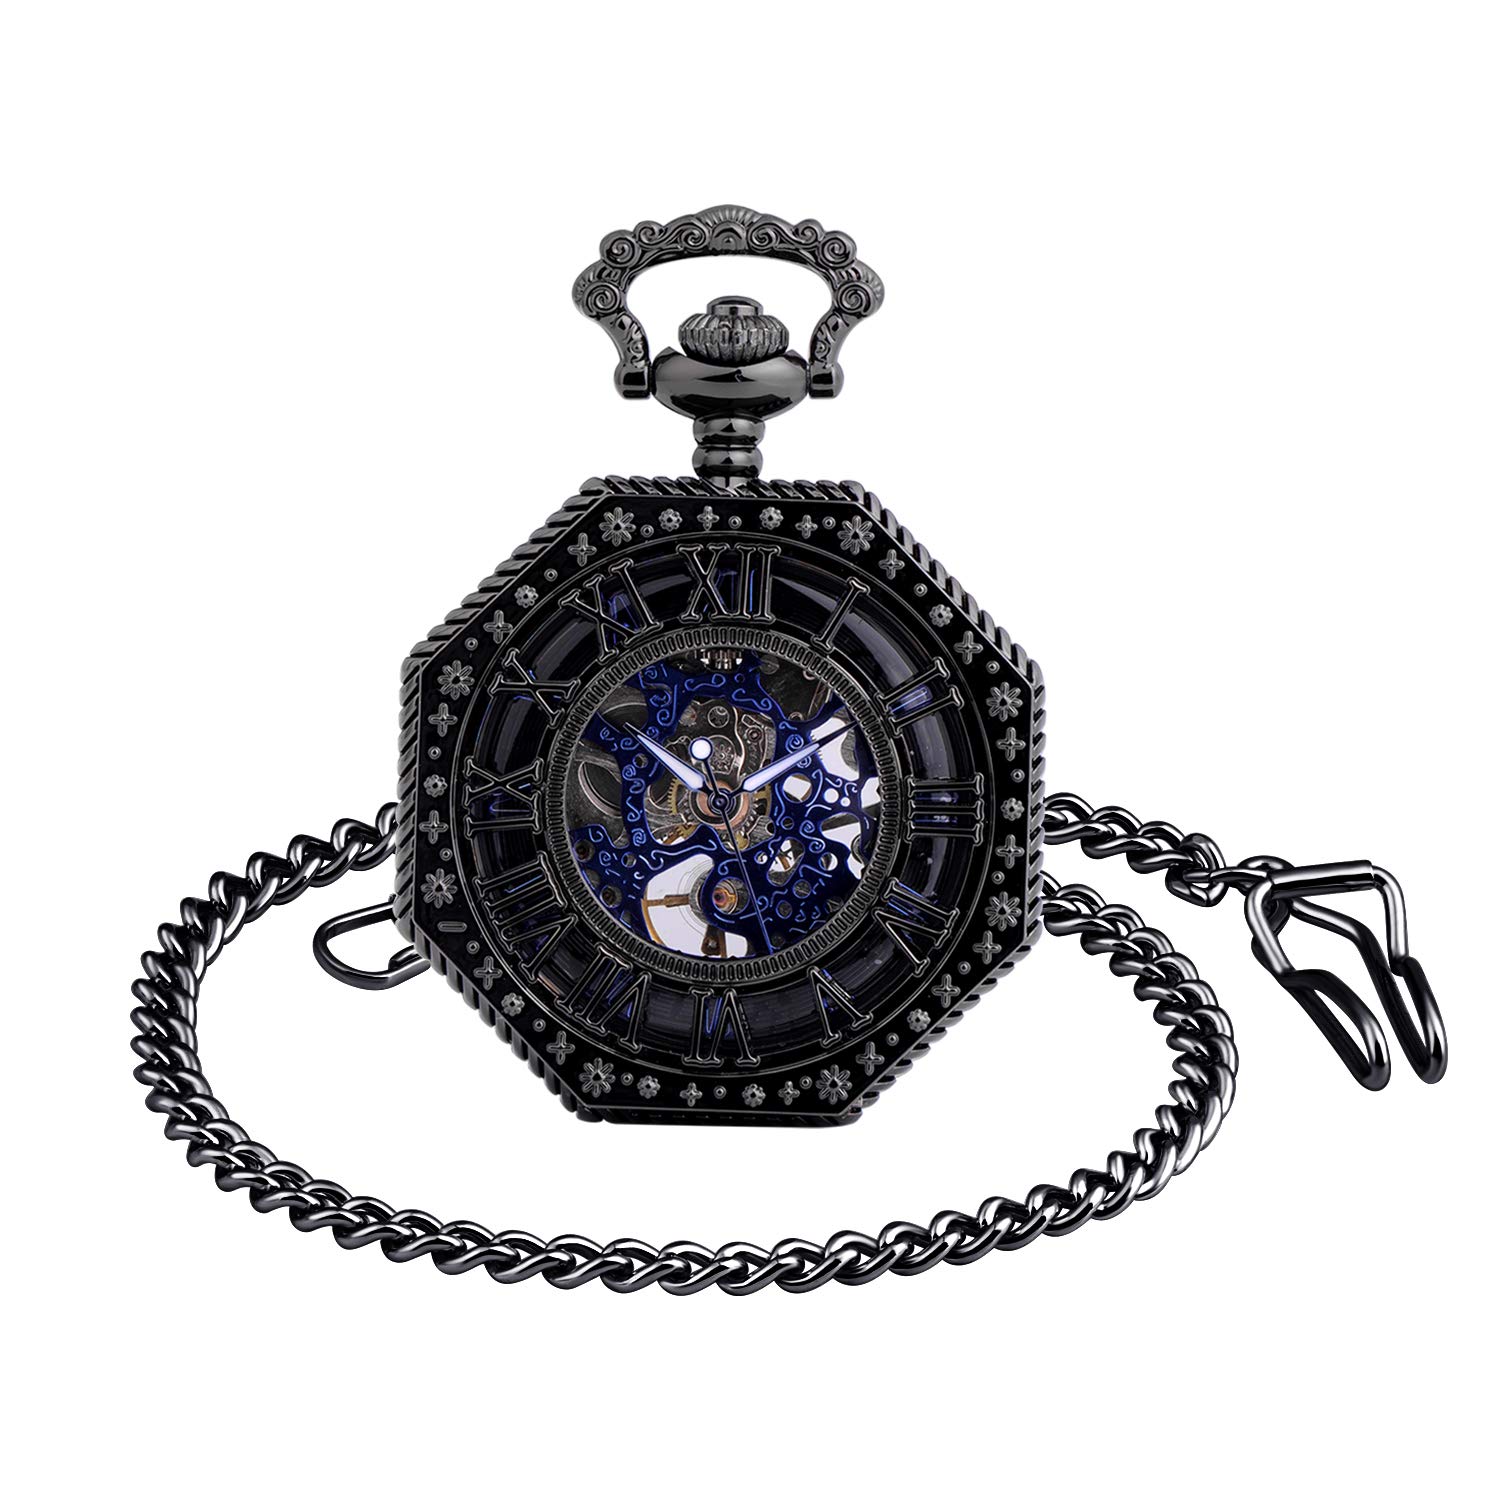 Unendlich U Mens Mechanical Pocket Watch, Vintage Roman Numerals Dial Octagonal Stainless Steel Bronze Case Pocket Watch for Men Women